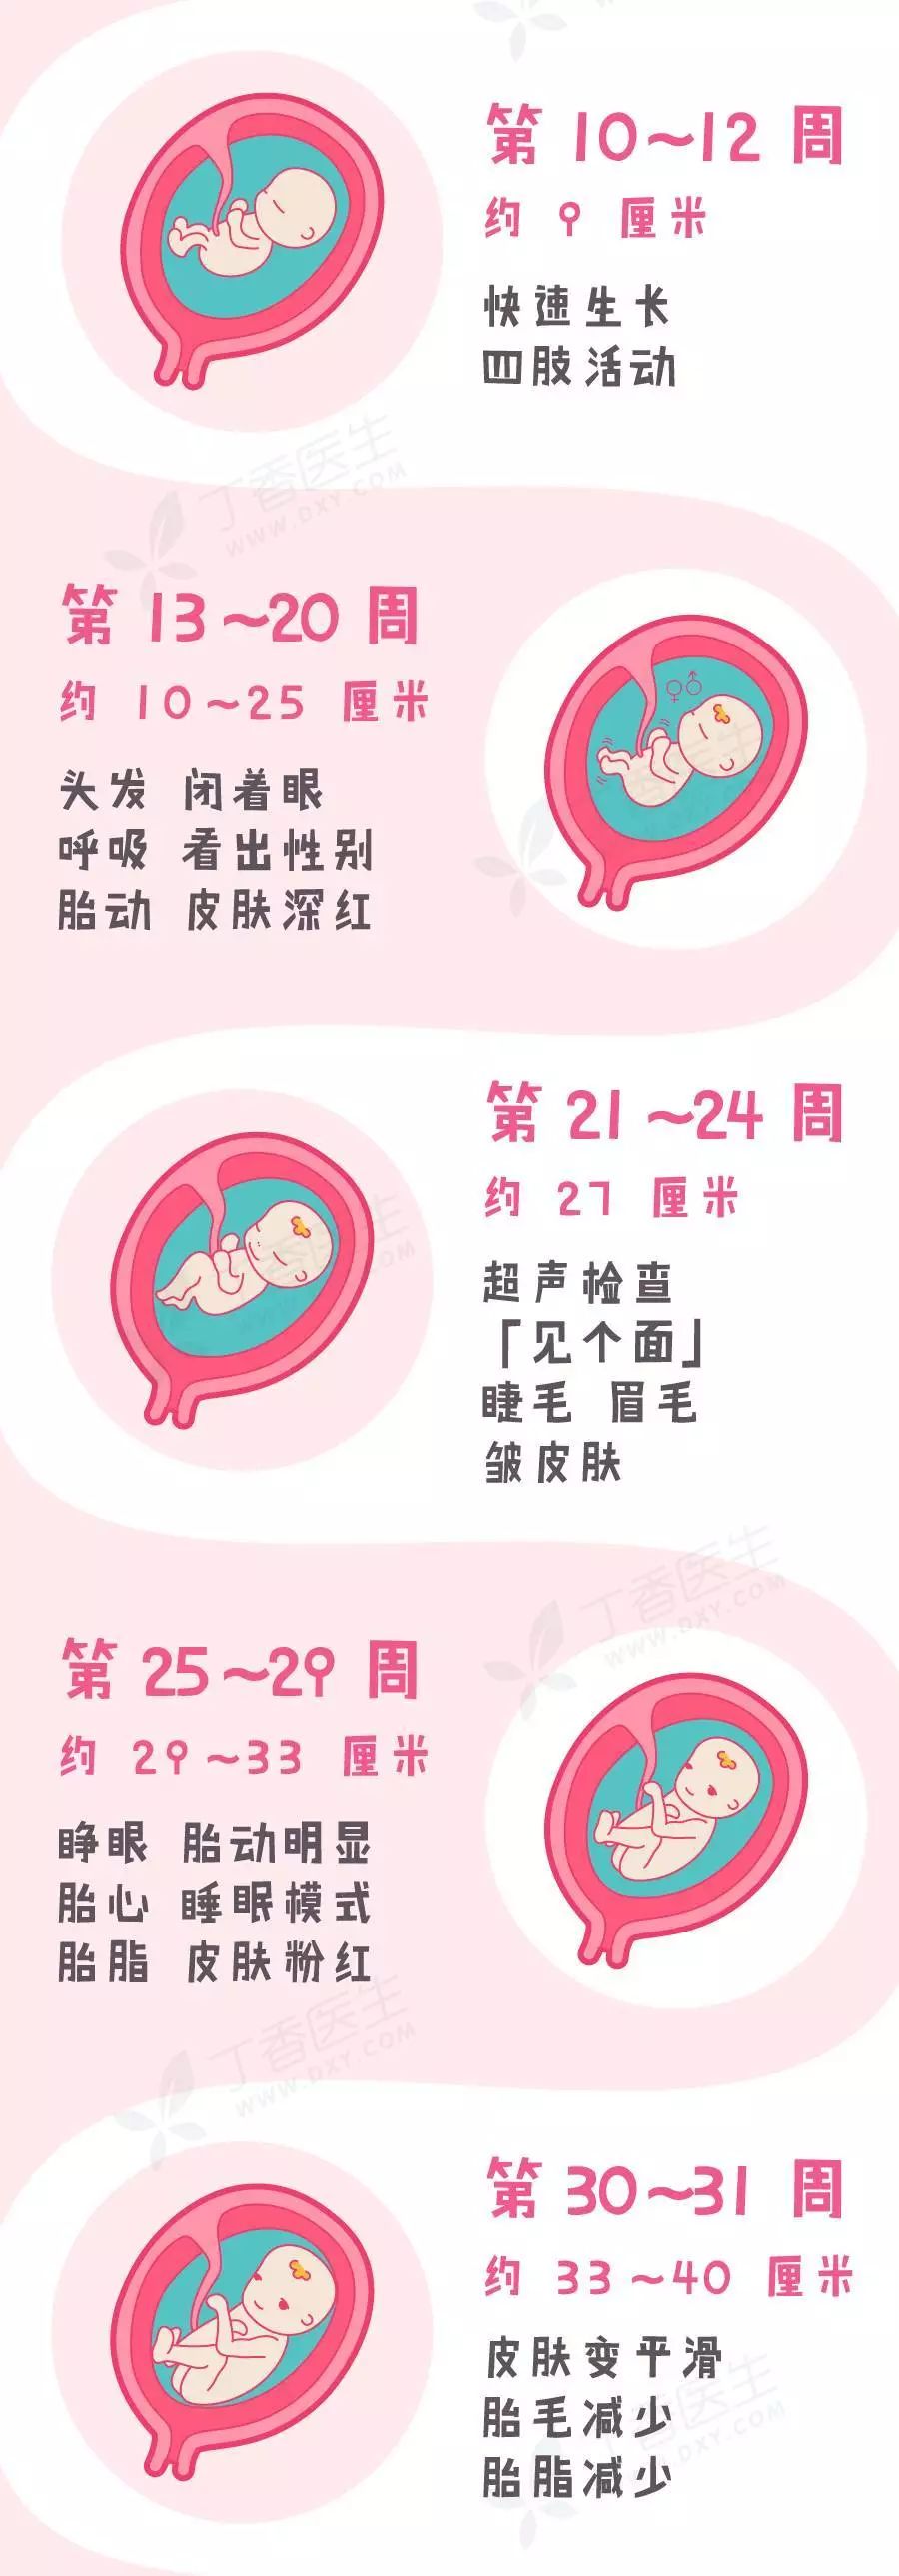 好神奇,一张图看宝宝在肚子里的成长过程